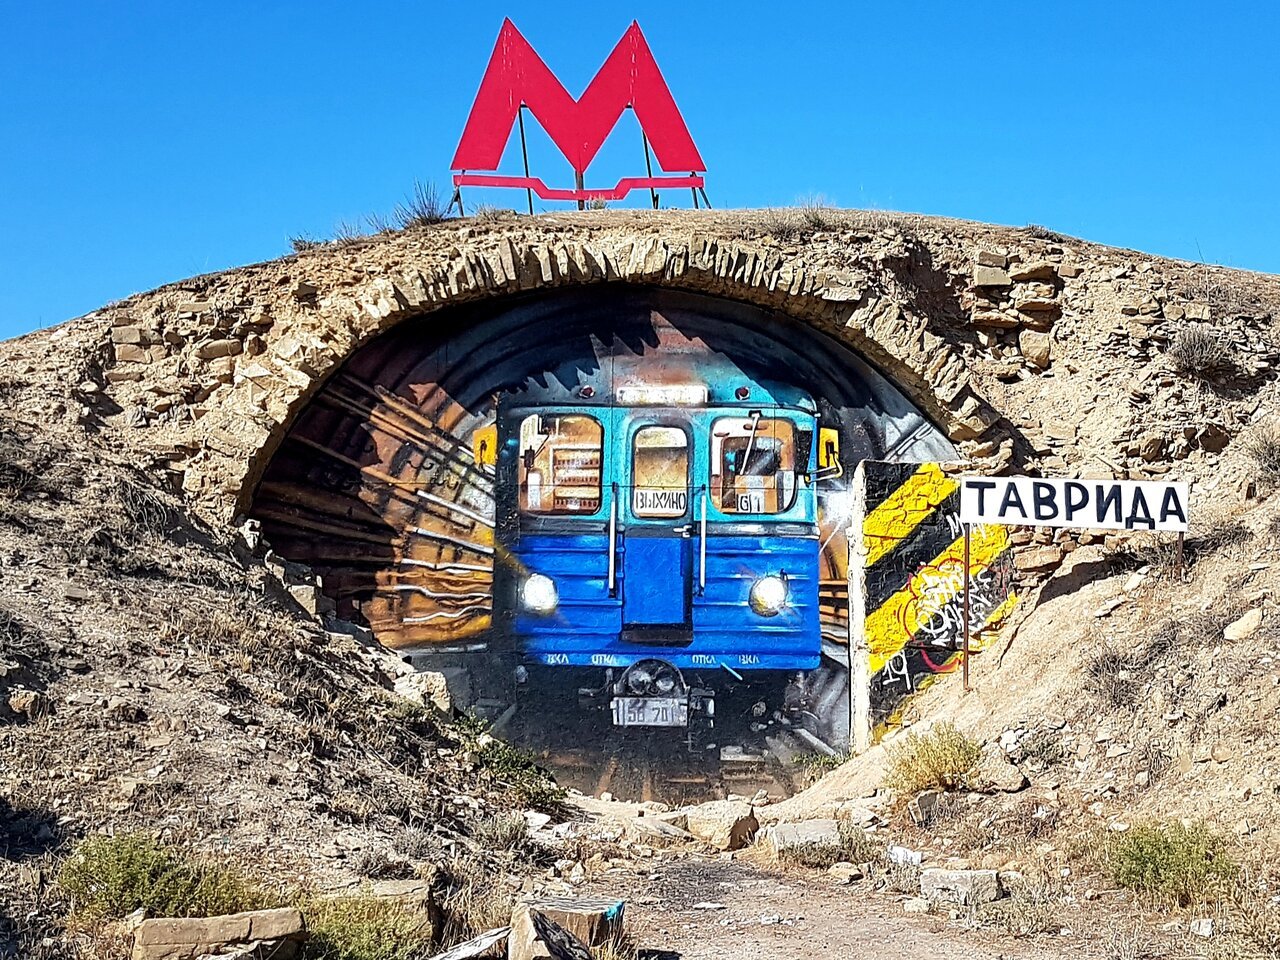 метро крымская